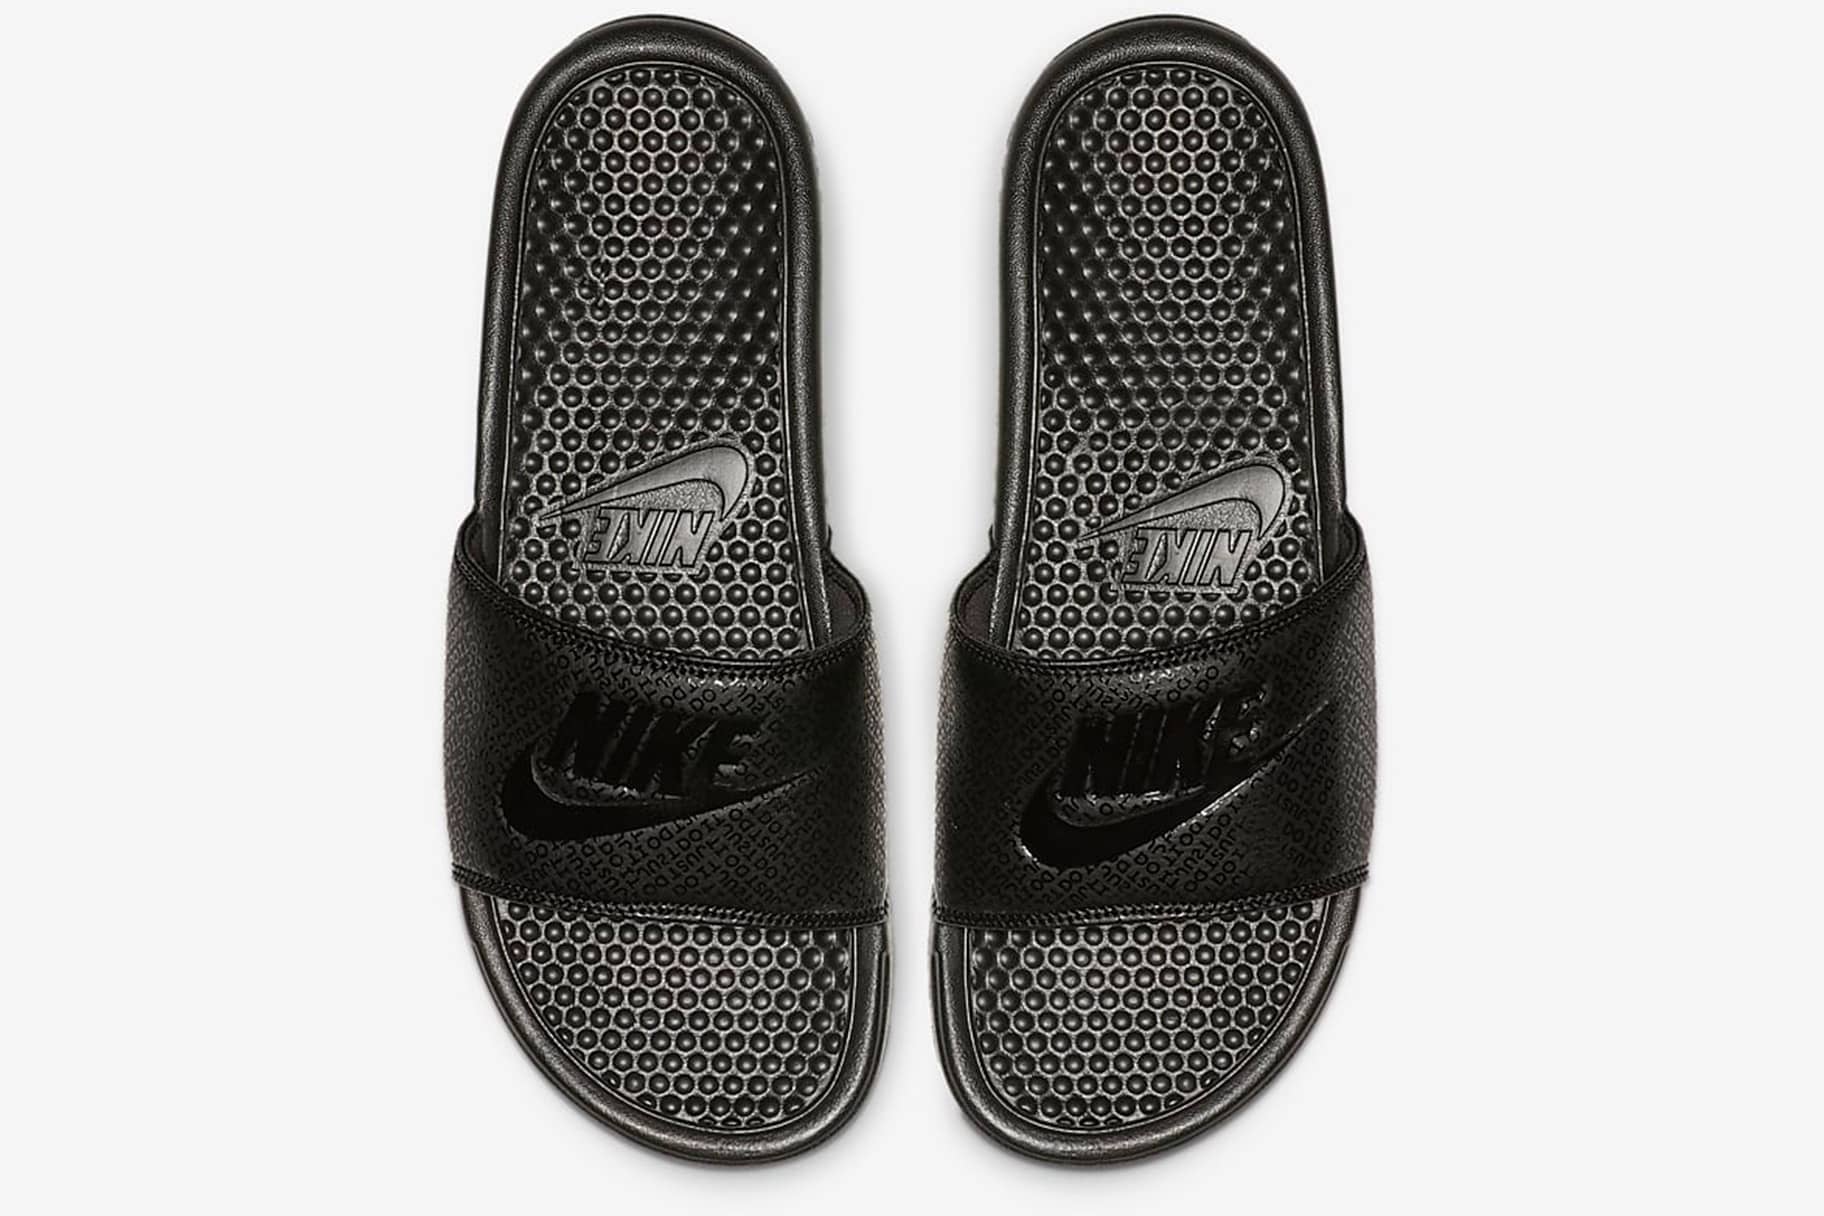 Nike Memory Foam Sandals for Men | Mercari